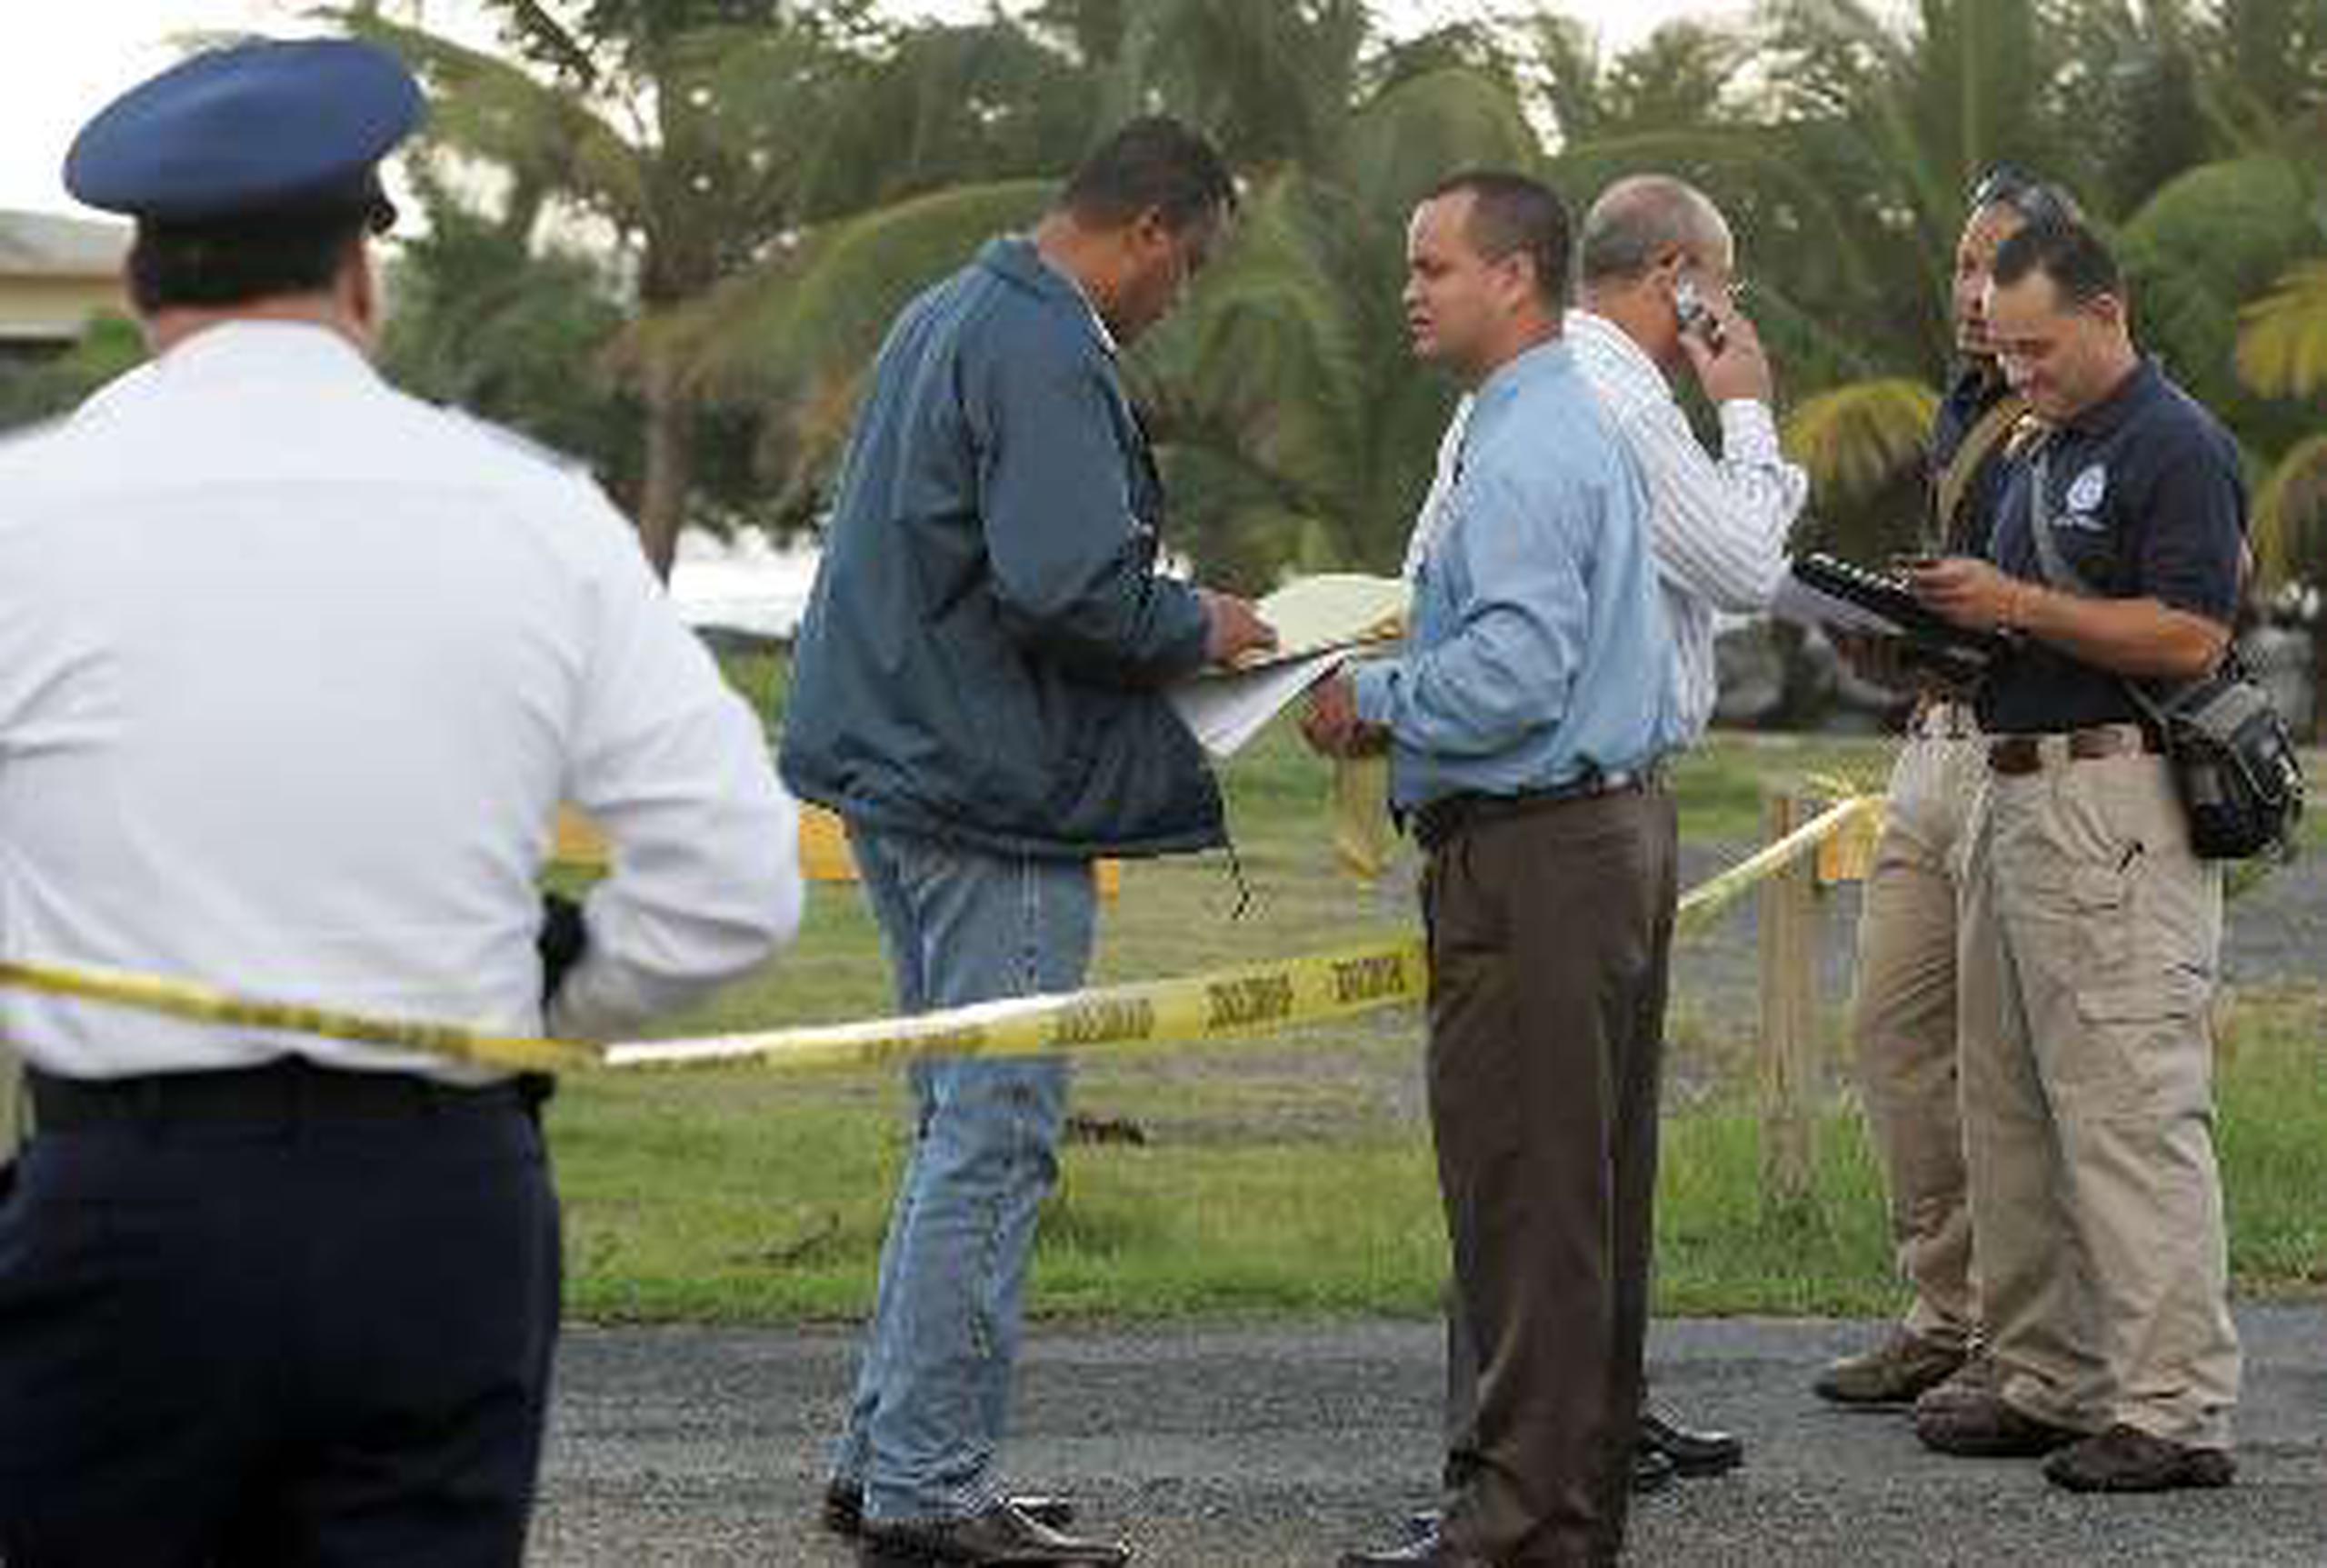  Agentes estatales y federales trabajan en la pesquisa sobre el robo en el polígono de Isla de Cabras.&nbsp;<font color="yellow">(Primera Hora / Teresa Canino Rivera)</font>